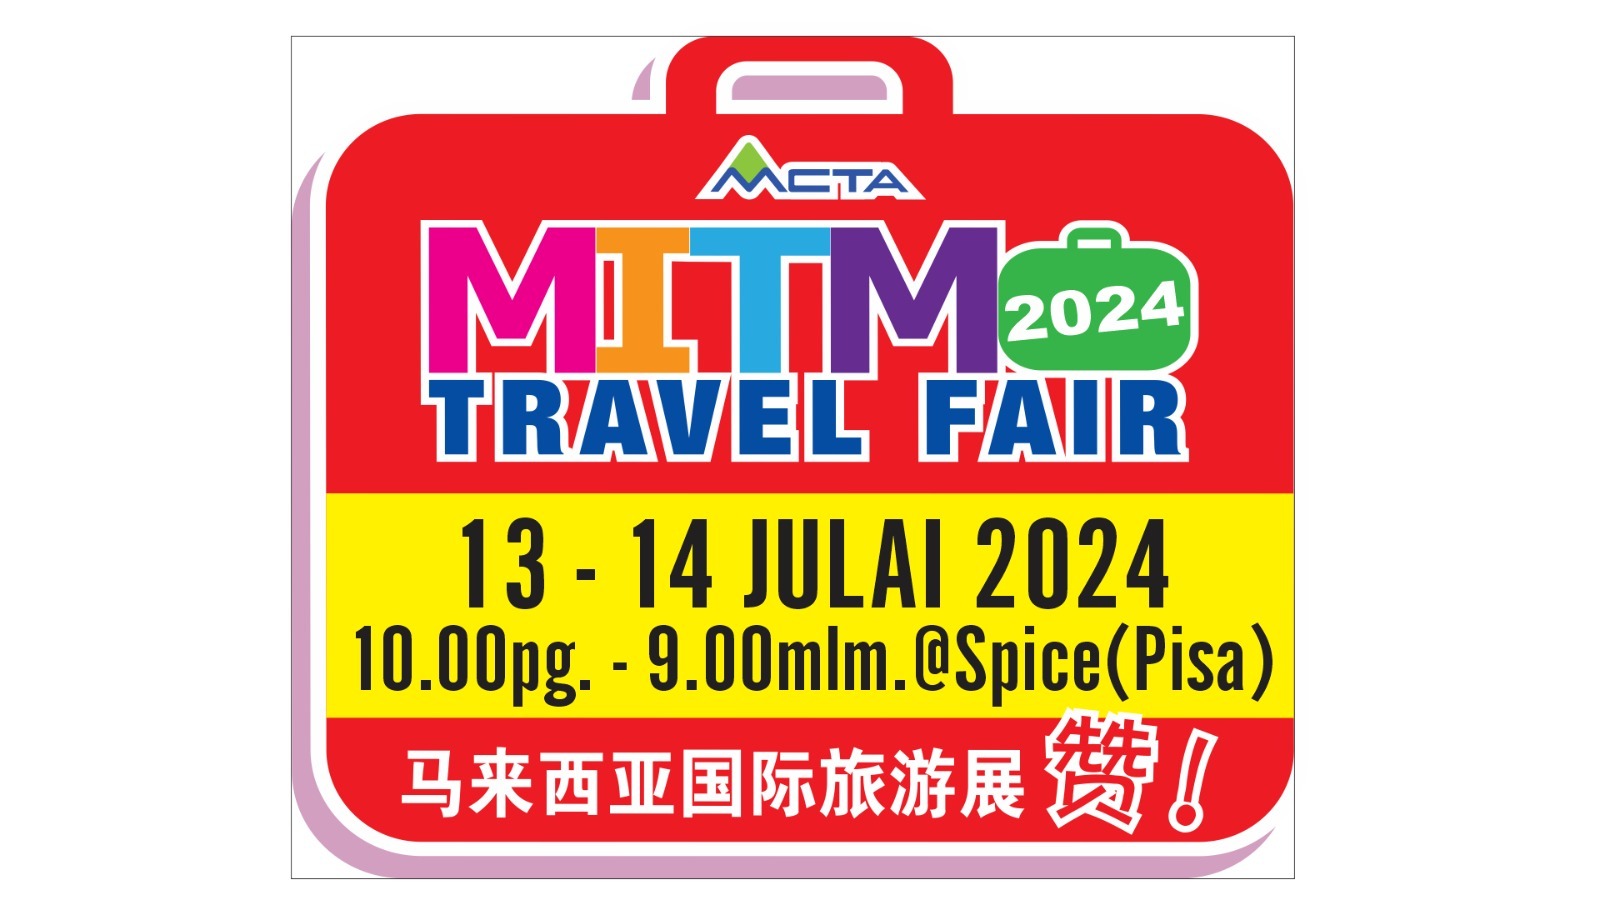 國際旅遊展MITM Travel Fair將於7月13日及14日引爆。